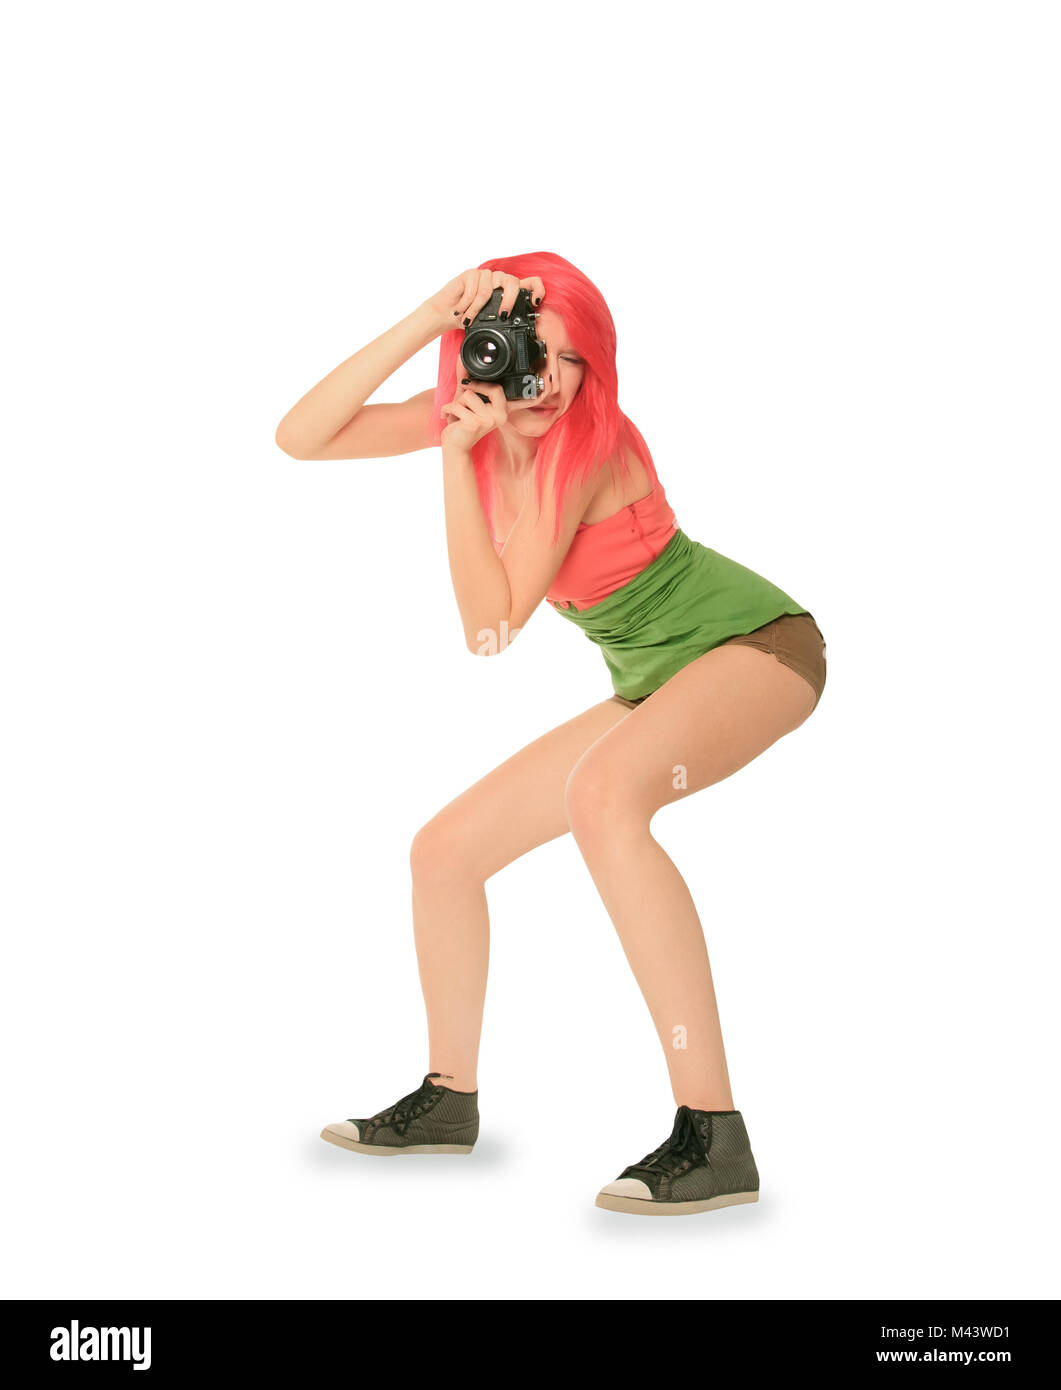 Capelli rossi donna con fotocamera foto isolato su bianco Foto Stock